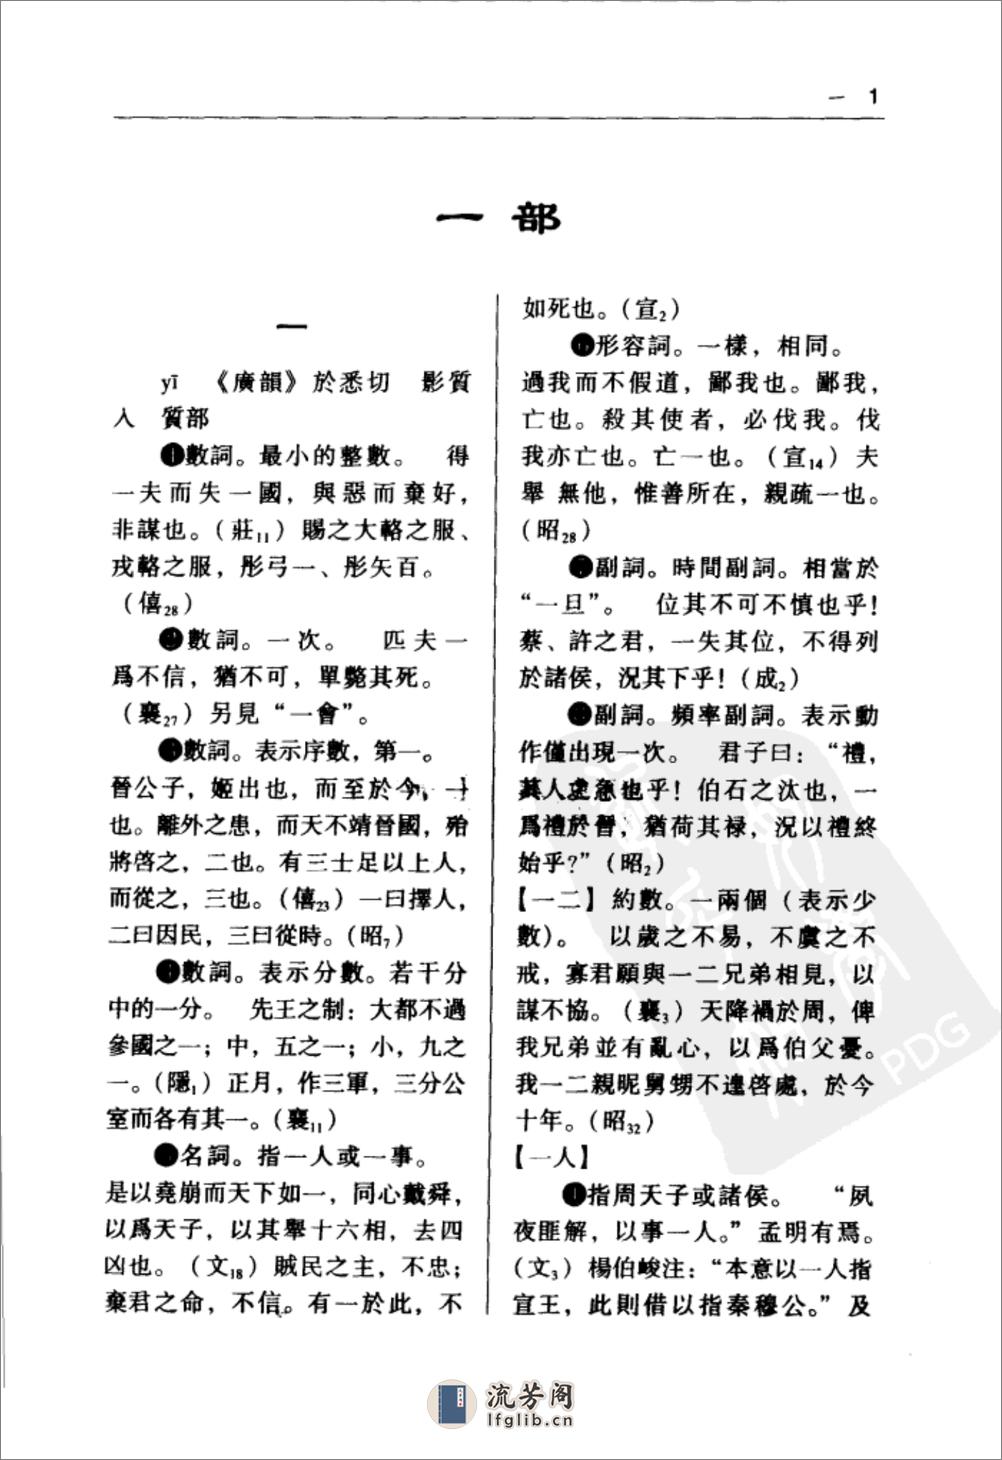 陈克烱 左传详解词典 - 第16页预览图